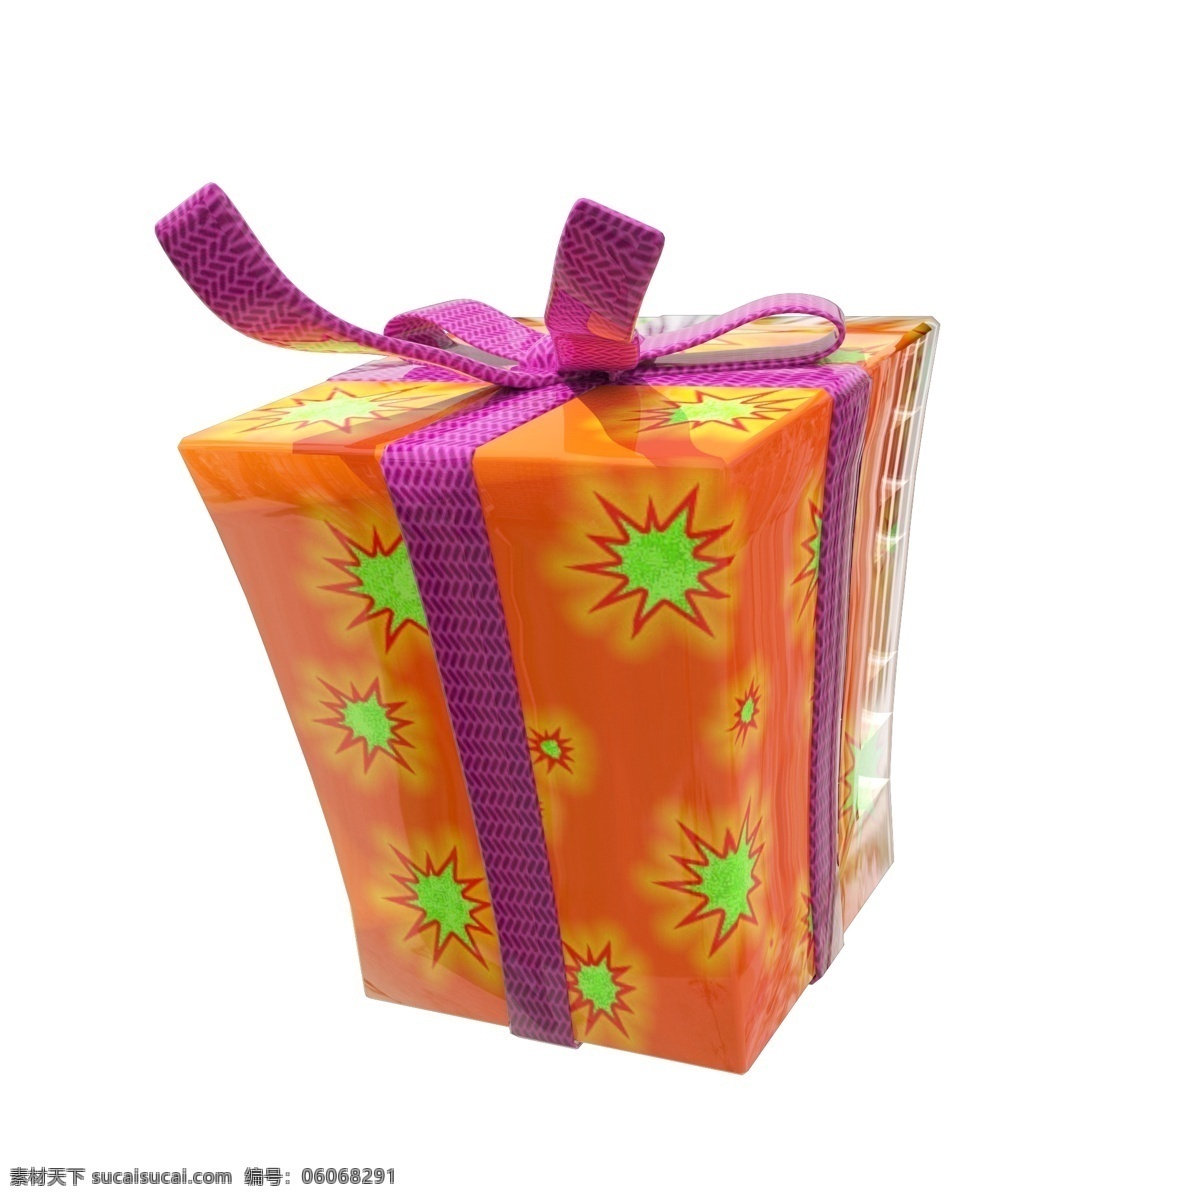 c4d 圣诞节 橙色 礼盒 橙色礼盒 圣诞节礼盒 c4d礼盒 紫色 缎带